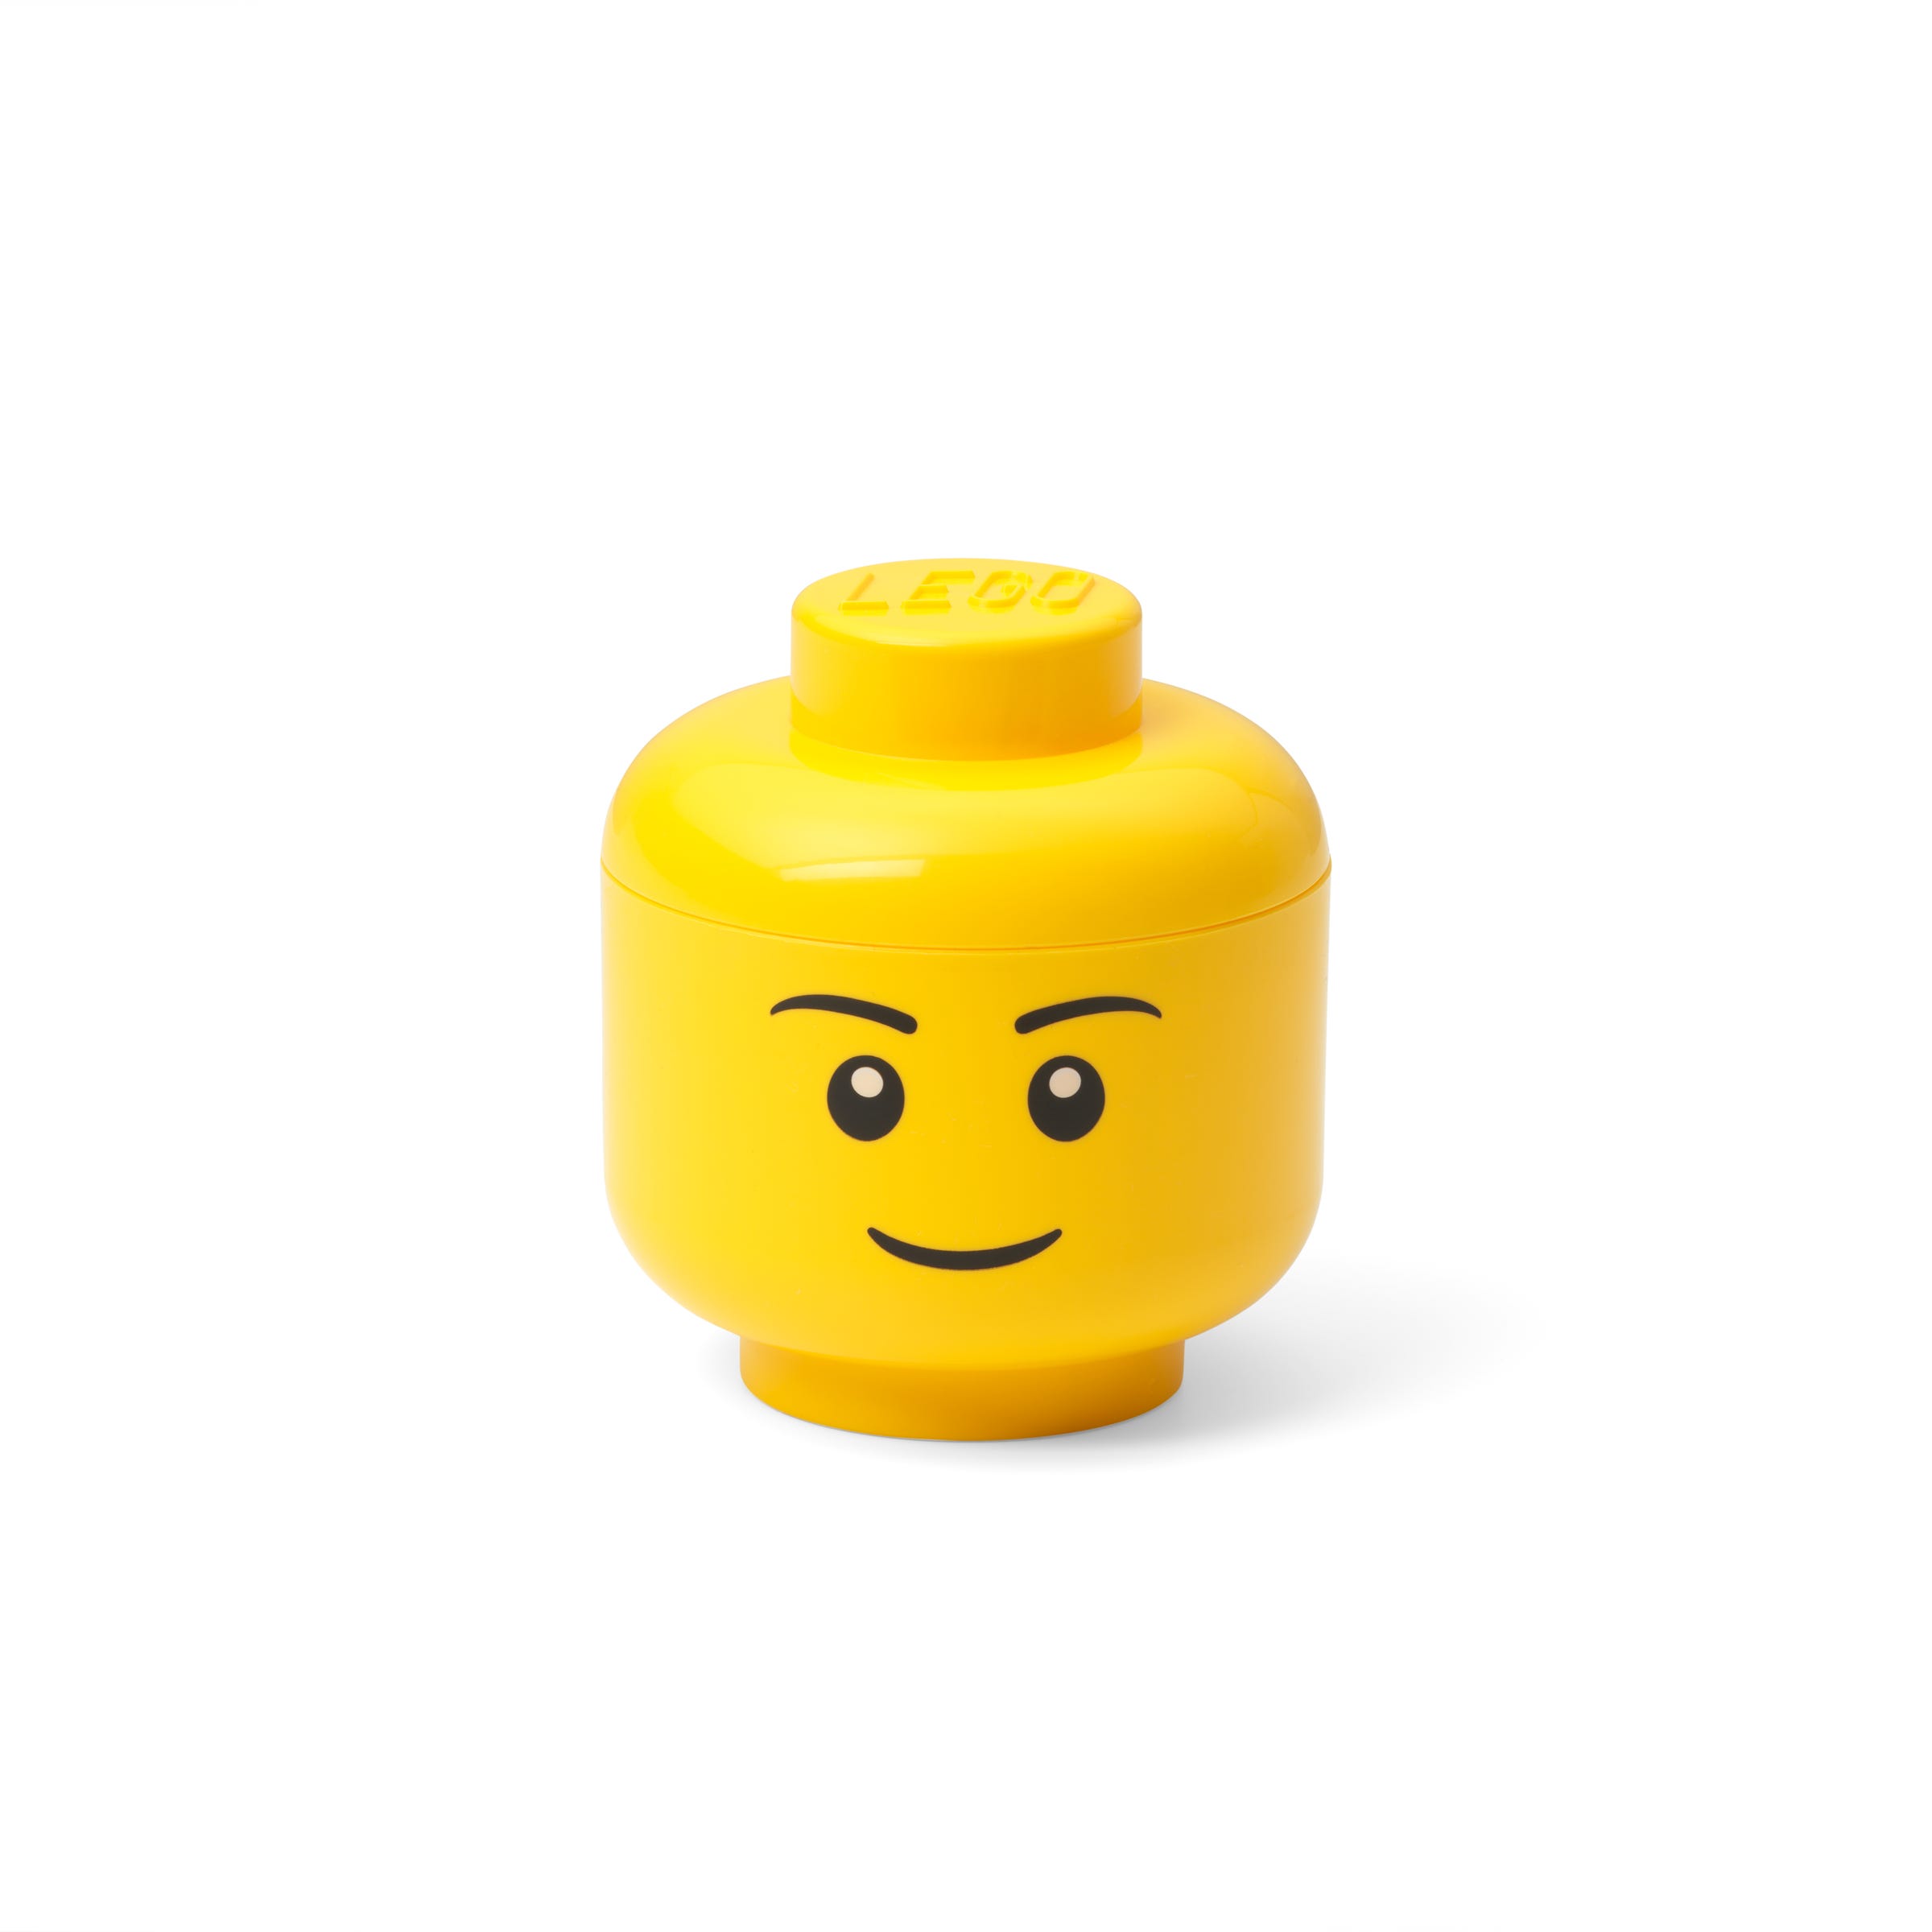 Zdjęcia - Akcesoria do produktów dla dzieci Lego Miniaturowy pojemnik w kształcie głowy jasnożółtej minifigurki chłopca 